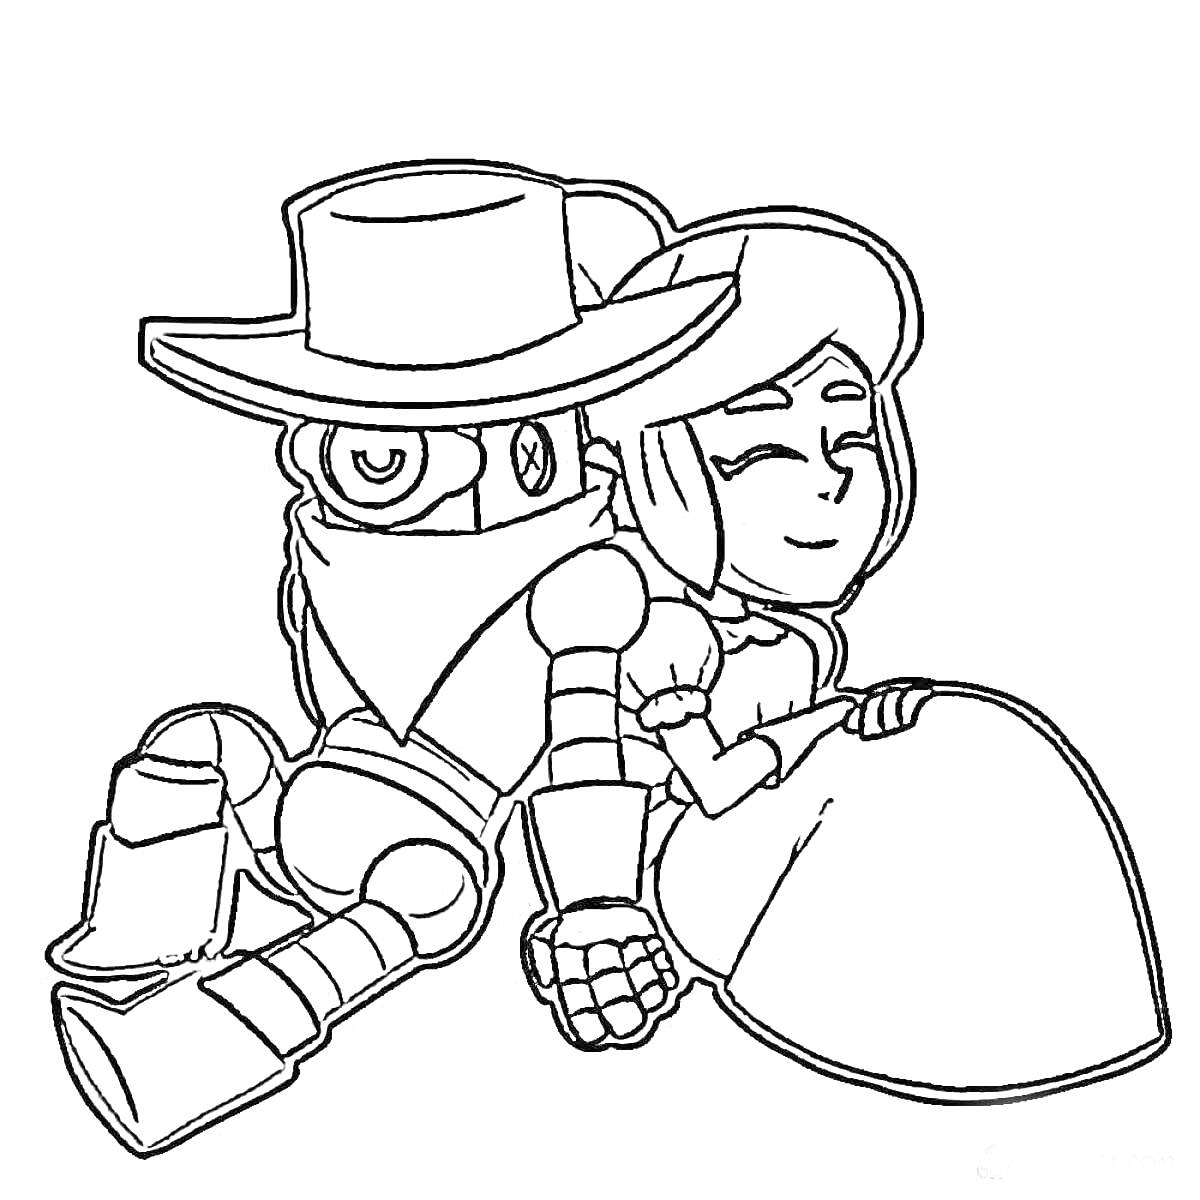 Раскраска Робот в ковбойской шляпе и маске, сидящий рядом с девушкой в платье, оба персонажа улыбаются.